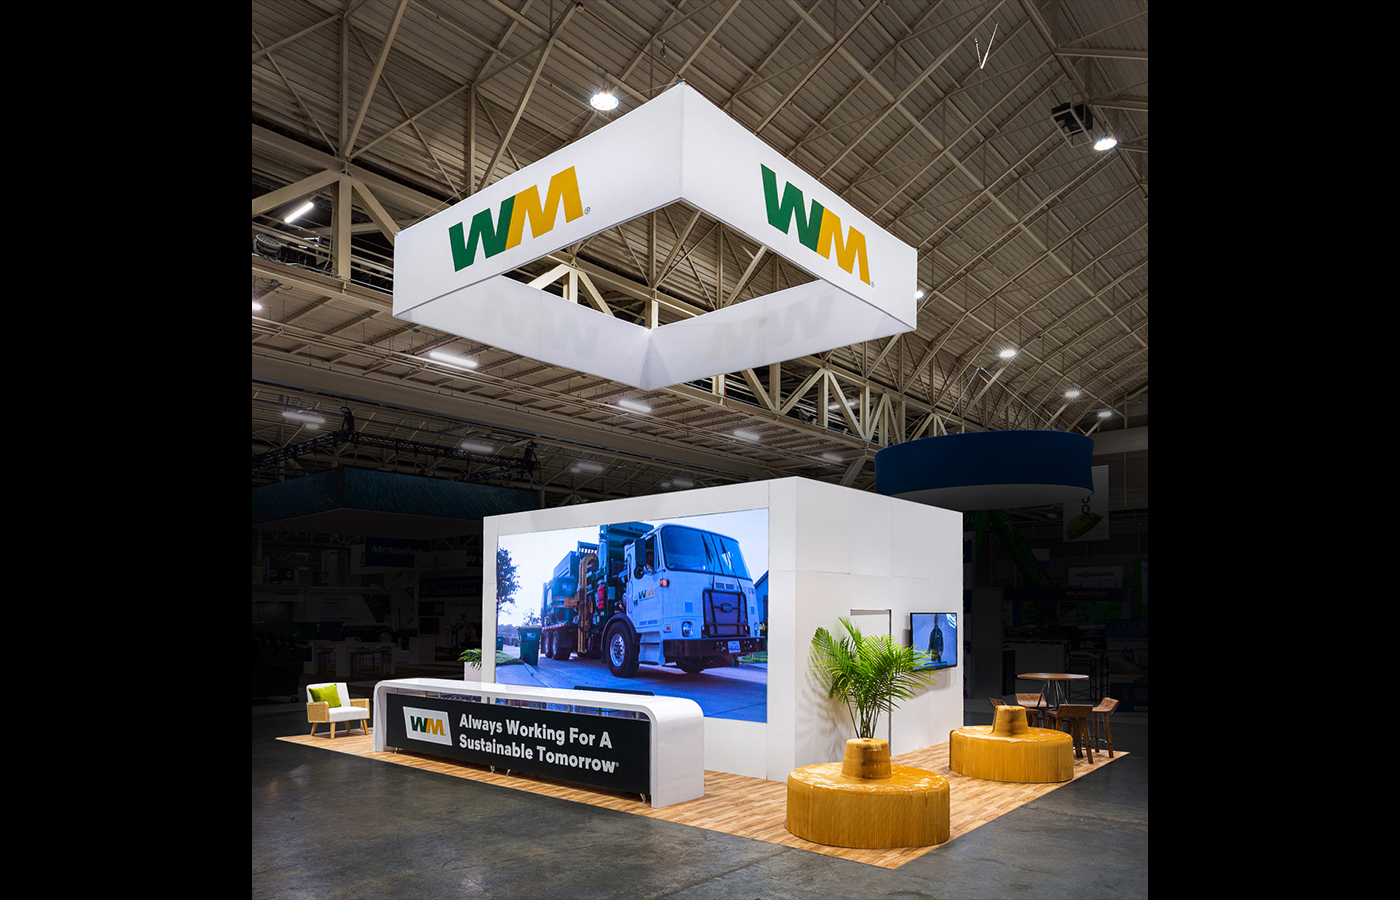 2021 SEMA Show Tradeshow Displays & Event Services